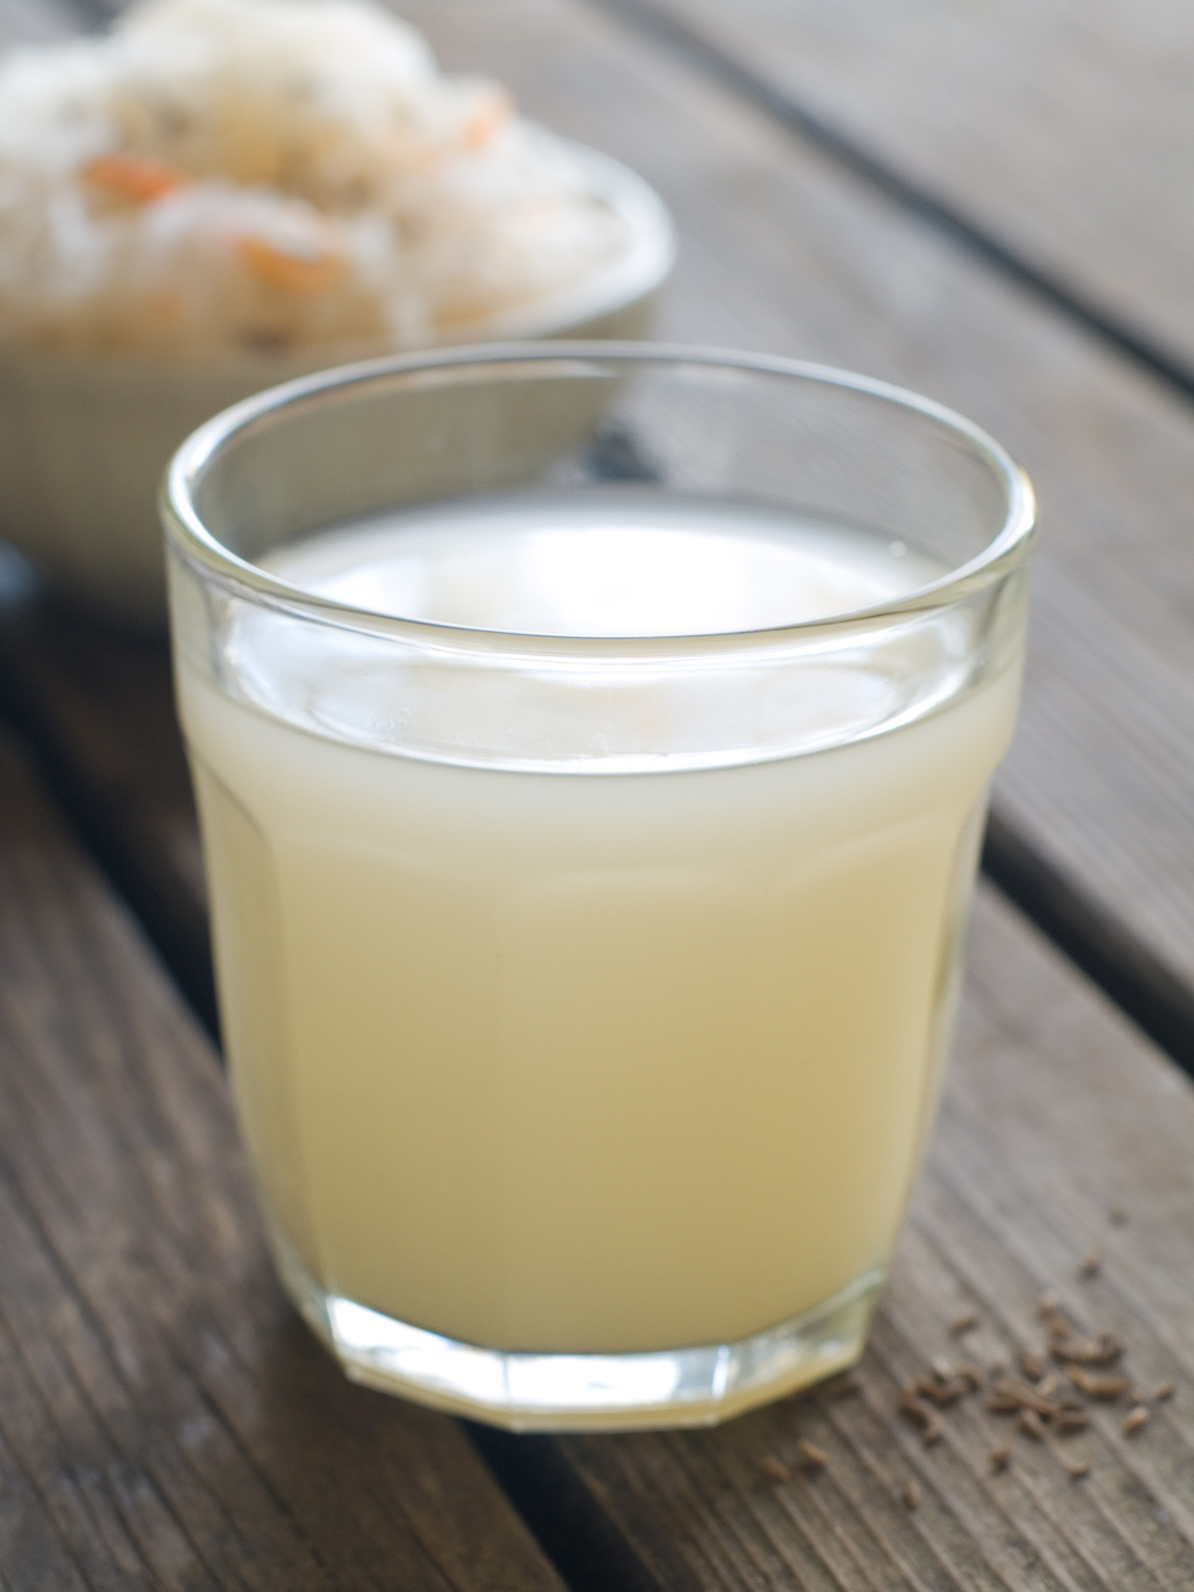 Sauerkraut drink in glass, selective focus